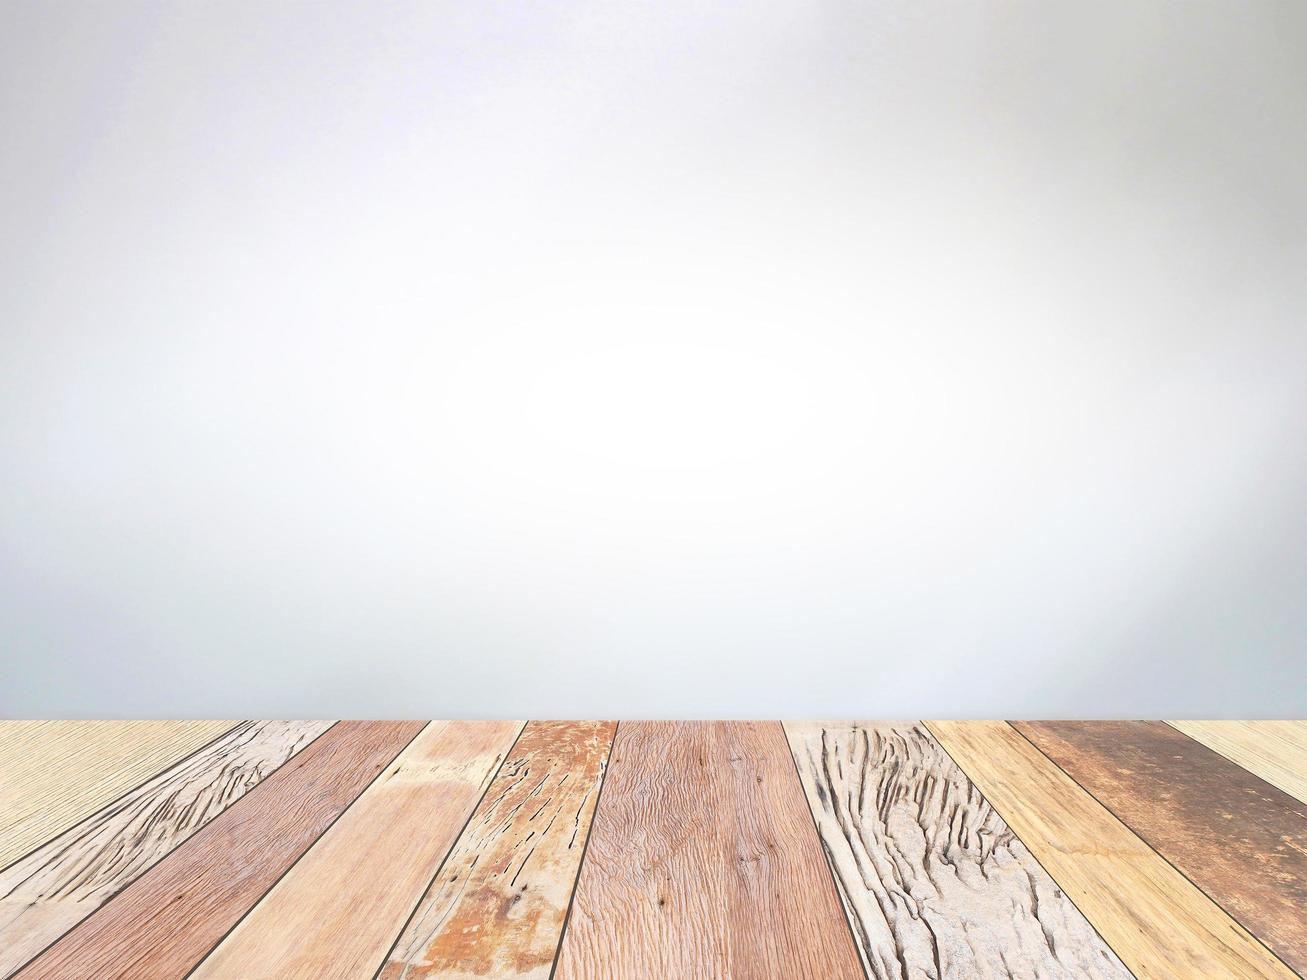 Holztisch auf grauem Hintergrund foto